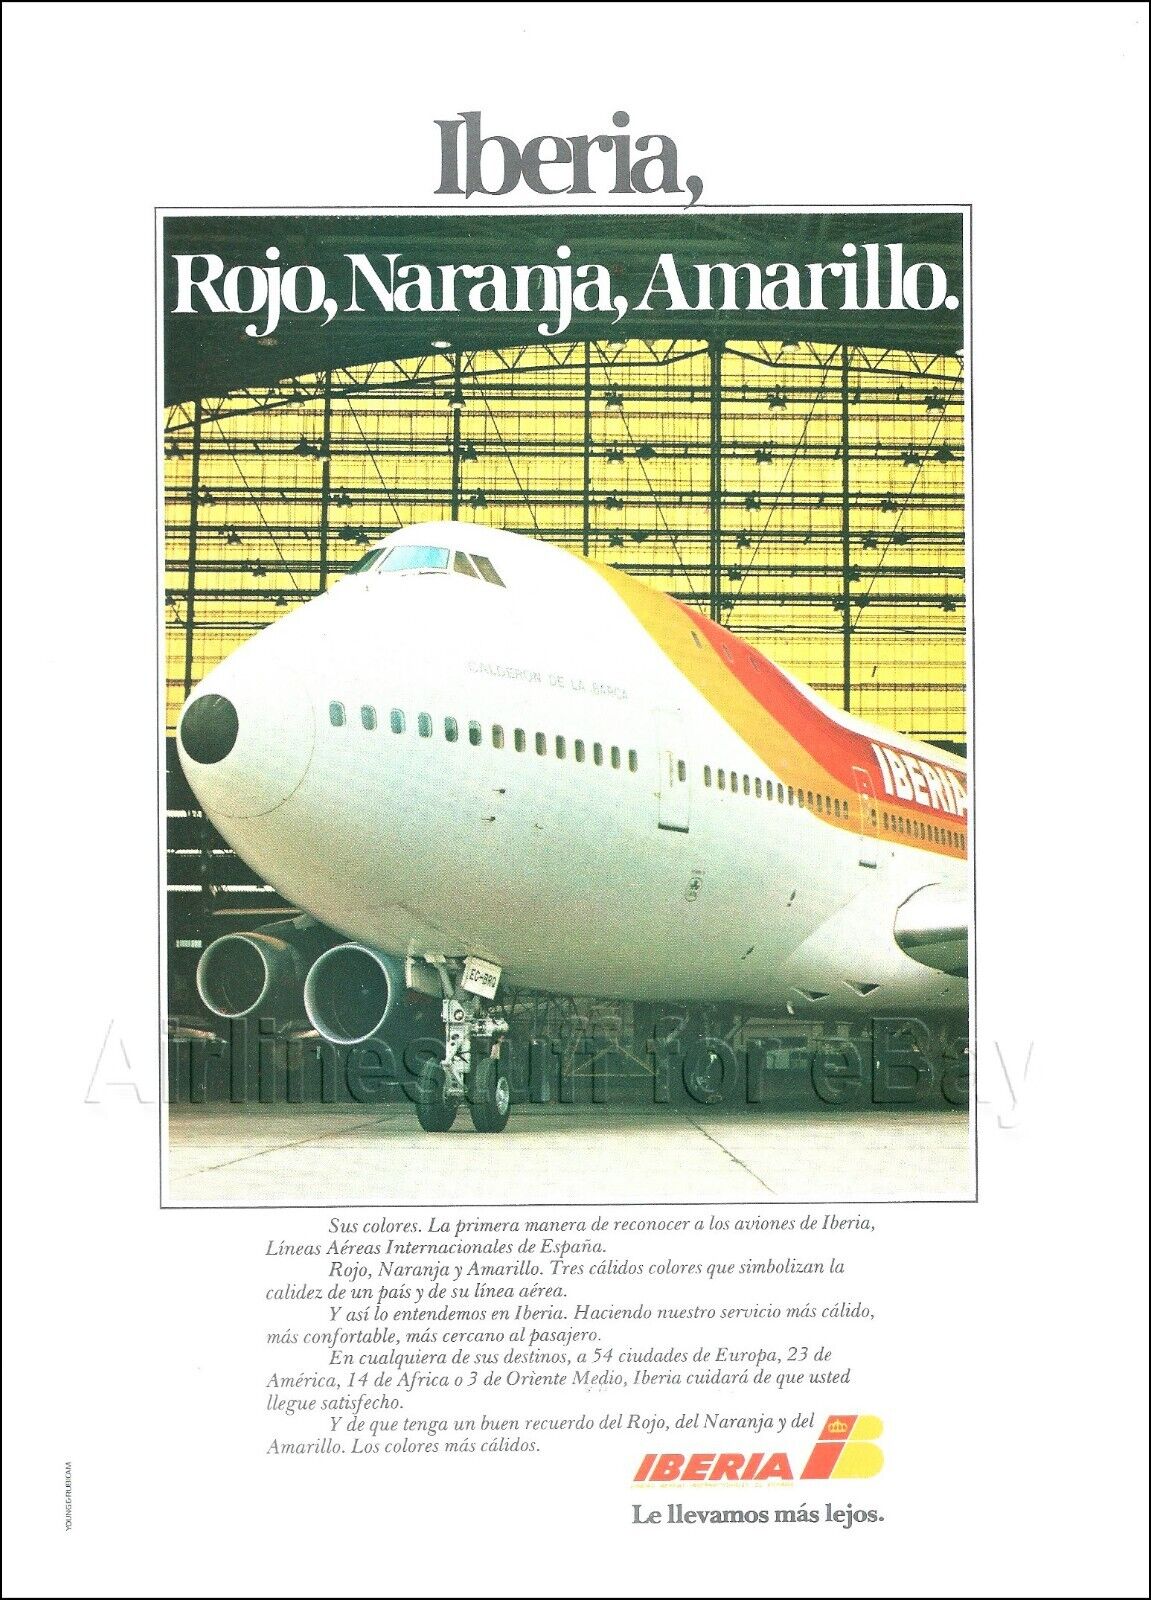 1980 IBERIA Airlines ad BOEING 747-256B Calderon de la Barca EC-BRQ advert SPAIN